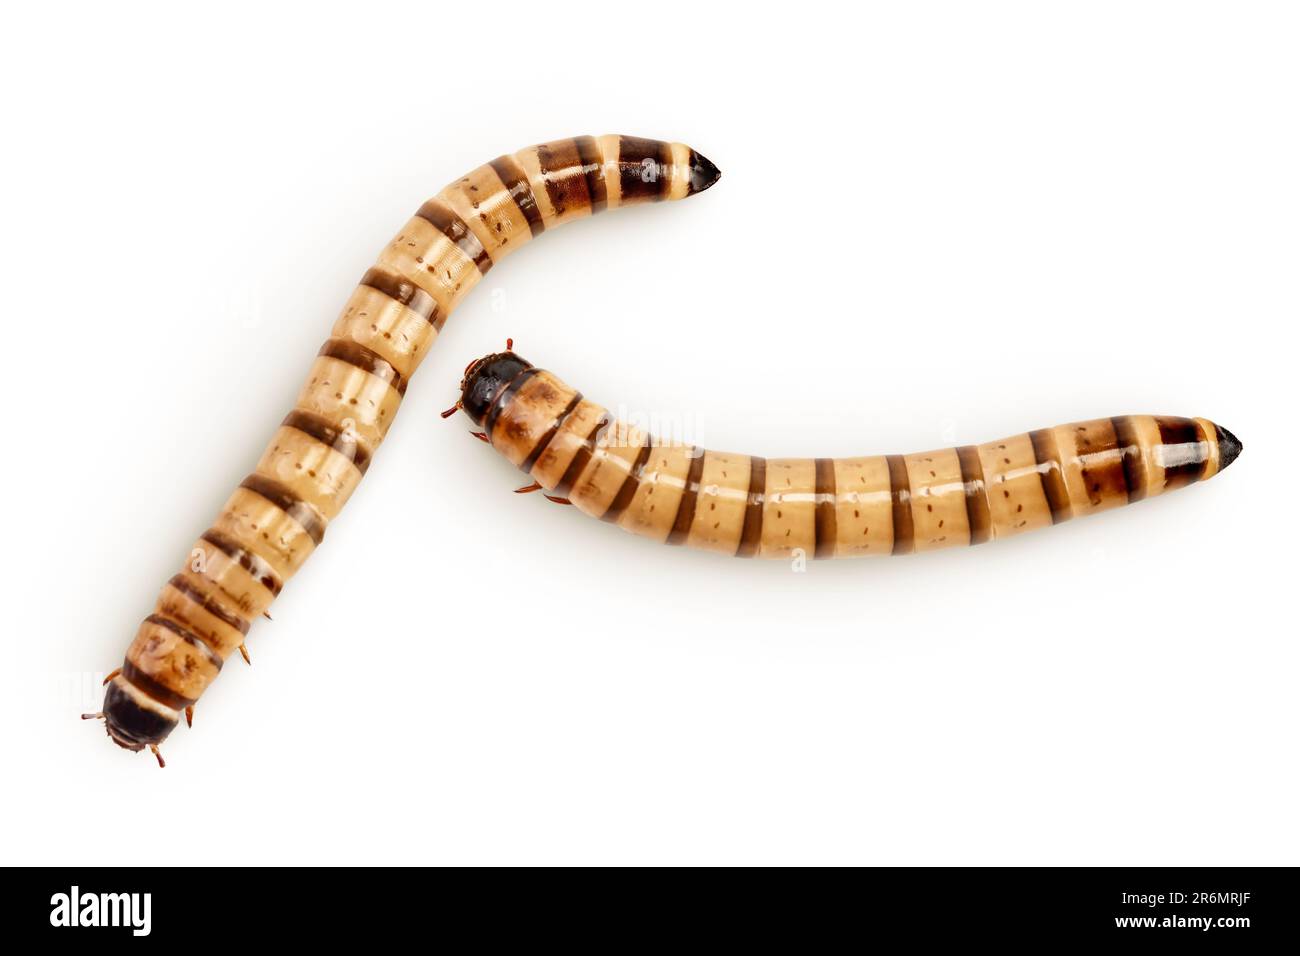 Gusanos larvas zophobas aisladas sobre fondo blanco. Comida para animales exóticos. Vista superior. Colocación plana Foto de stock